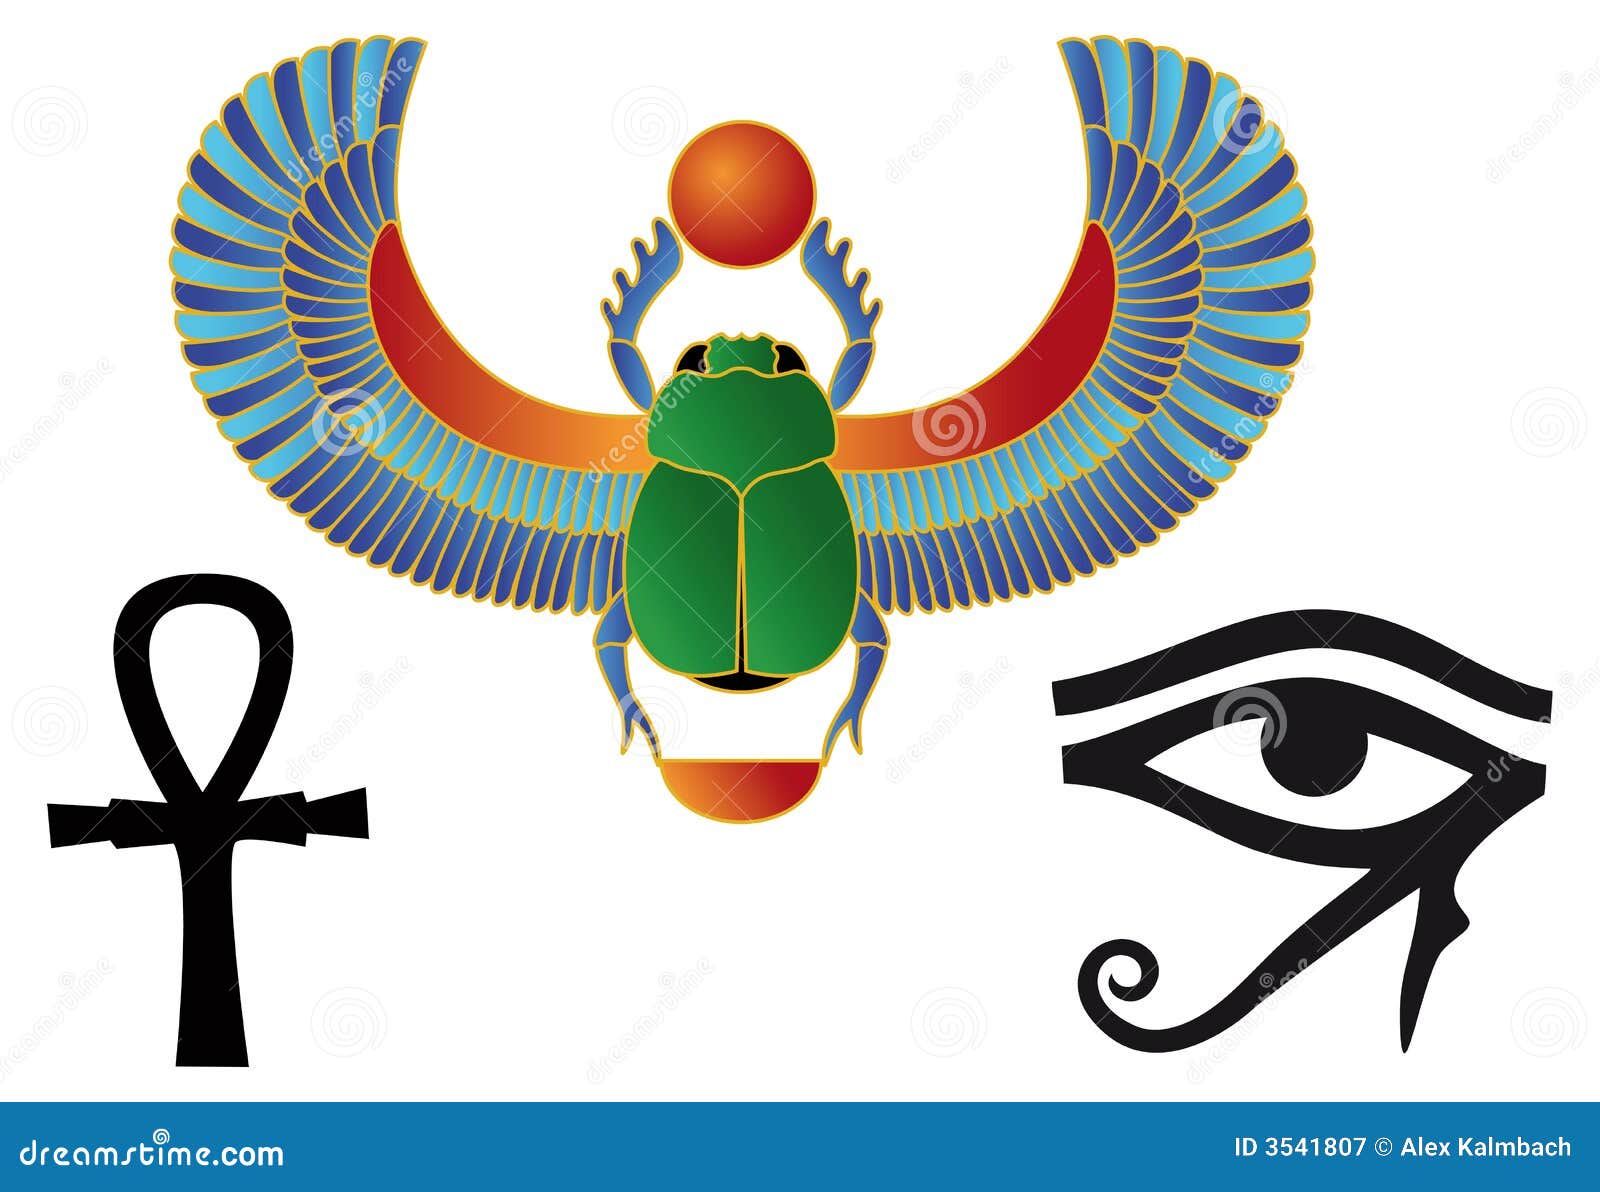 Выполнить эскиз украшения в стиле древнеегипетского искусства